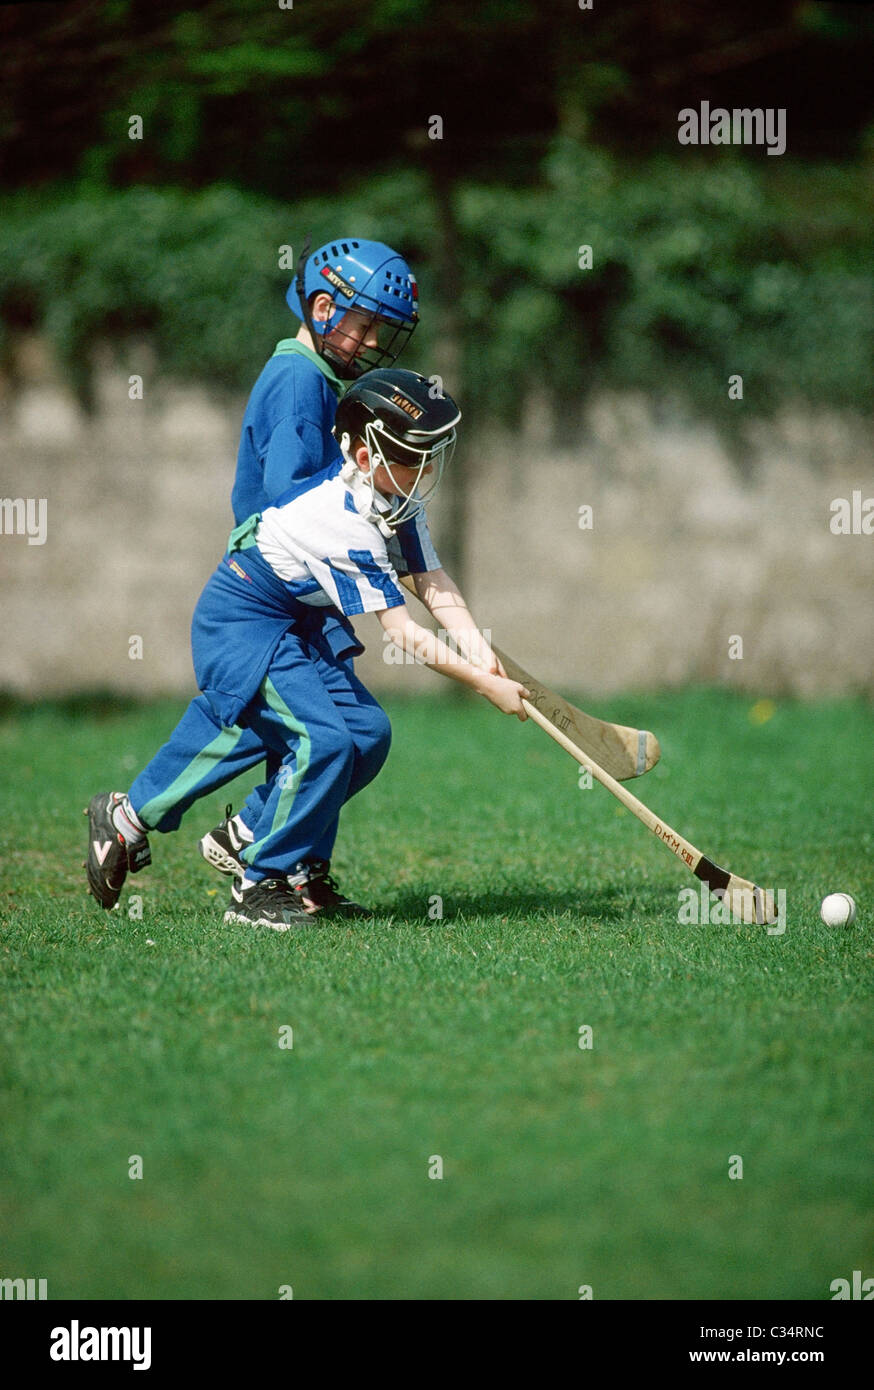 Children Playing Gaelic Sport Of Hurling, Ireland Stock Photo